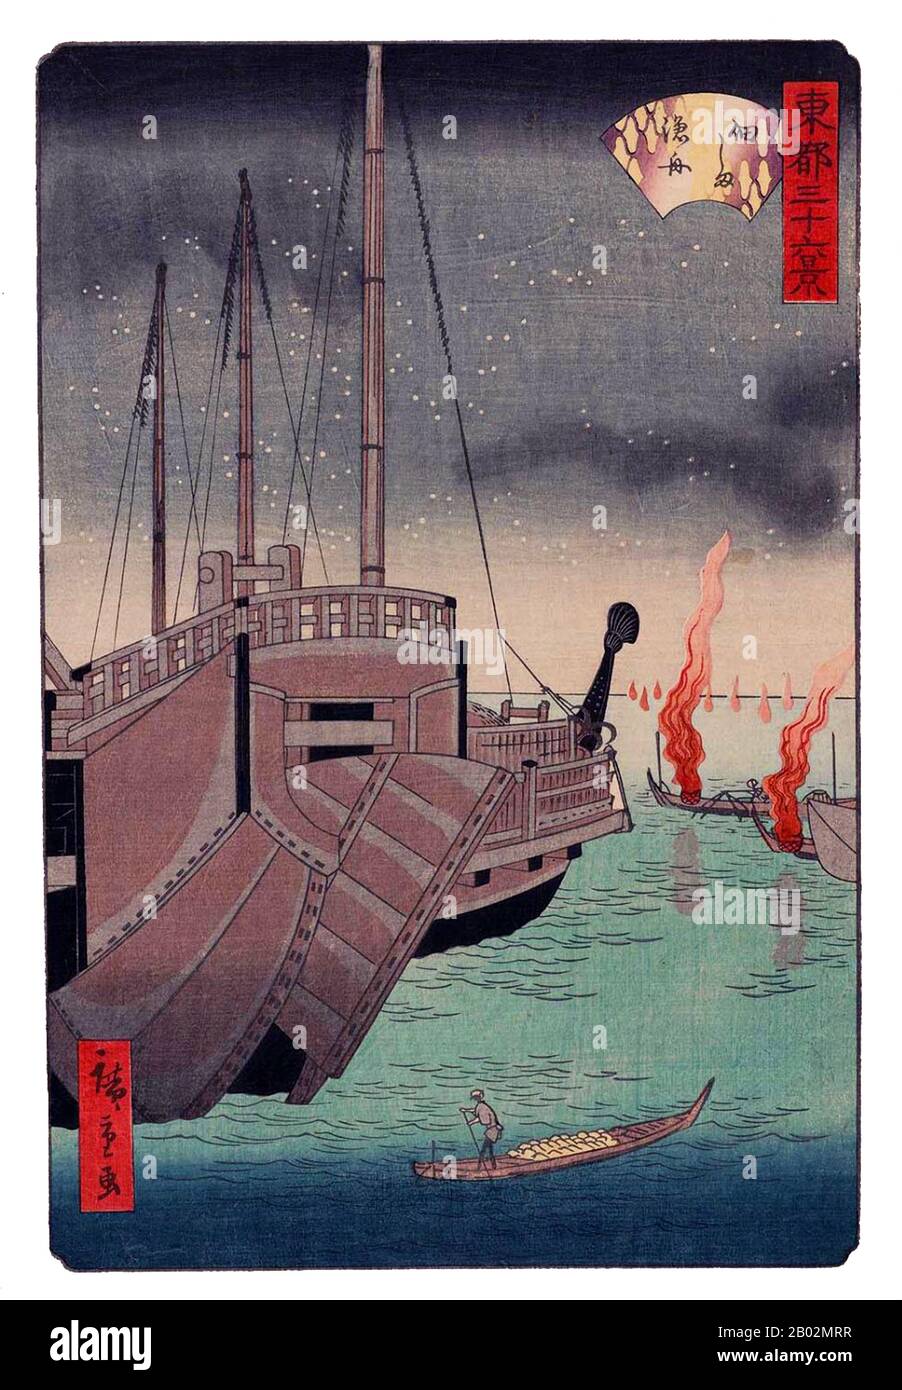 Hiroshige II (歌川広重 2代目, 1826 – 21 ottobre 1869) è stato un . È nato Suzuki Champei (鈴木鎮平). Divenne studente e figlio adottivo di Hiroshige, poi fu data l'identità artistica di "Shigenobu". Quando il senior Hiroshige morì nel 1858, Shigenobu sposò la figlia di suo maestro, Otatsu. A quel tempo adottò il nome d'arte "Hiroshige". Circa il 1865, il matrimonio fu sciolto. Hiroshige II si trasferì a Yokohama e riprese con il nome di Shigenobu. Ha anche firmato alcuni dei suoi lavori come Ryūshō. Un altro allievo del primo Hiroshige, Shigemasa, allora Foto Stock